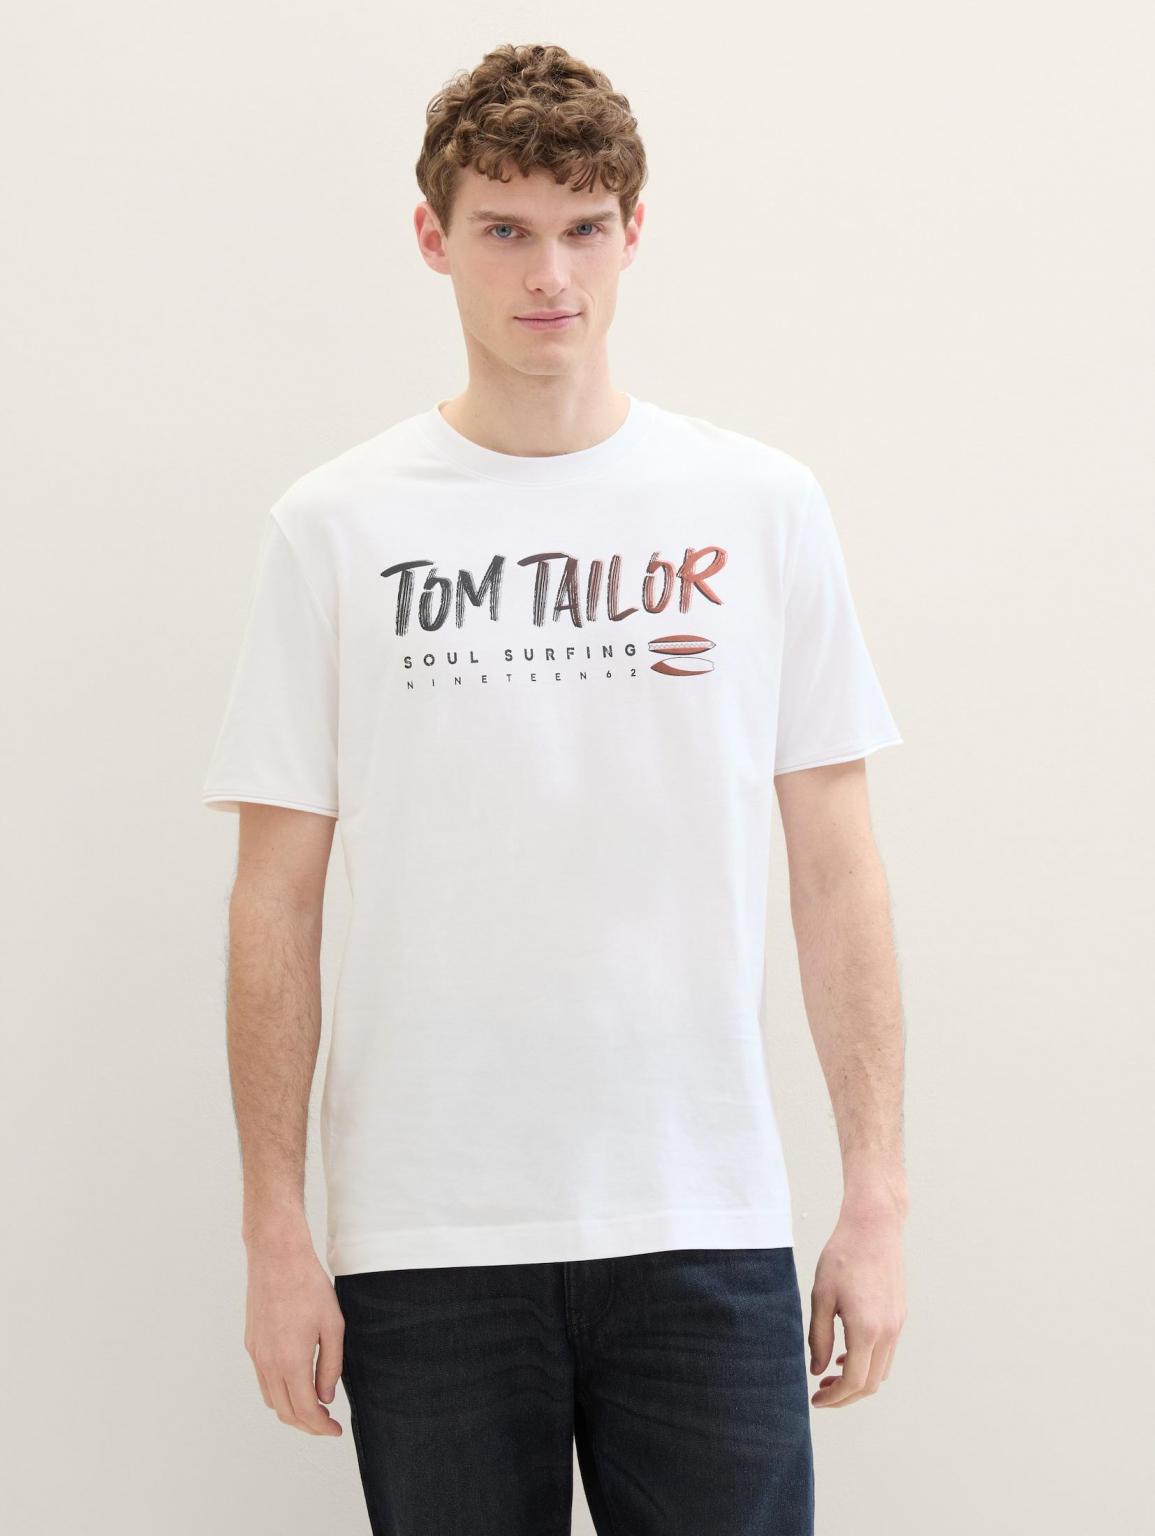 Tom Tailor® Logo Text Tee - White